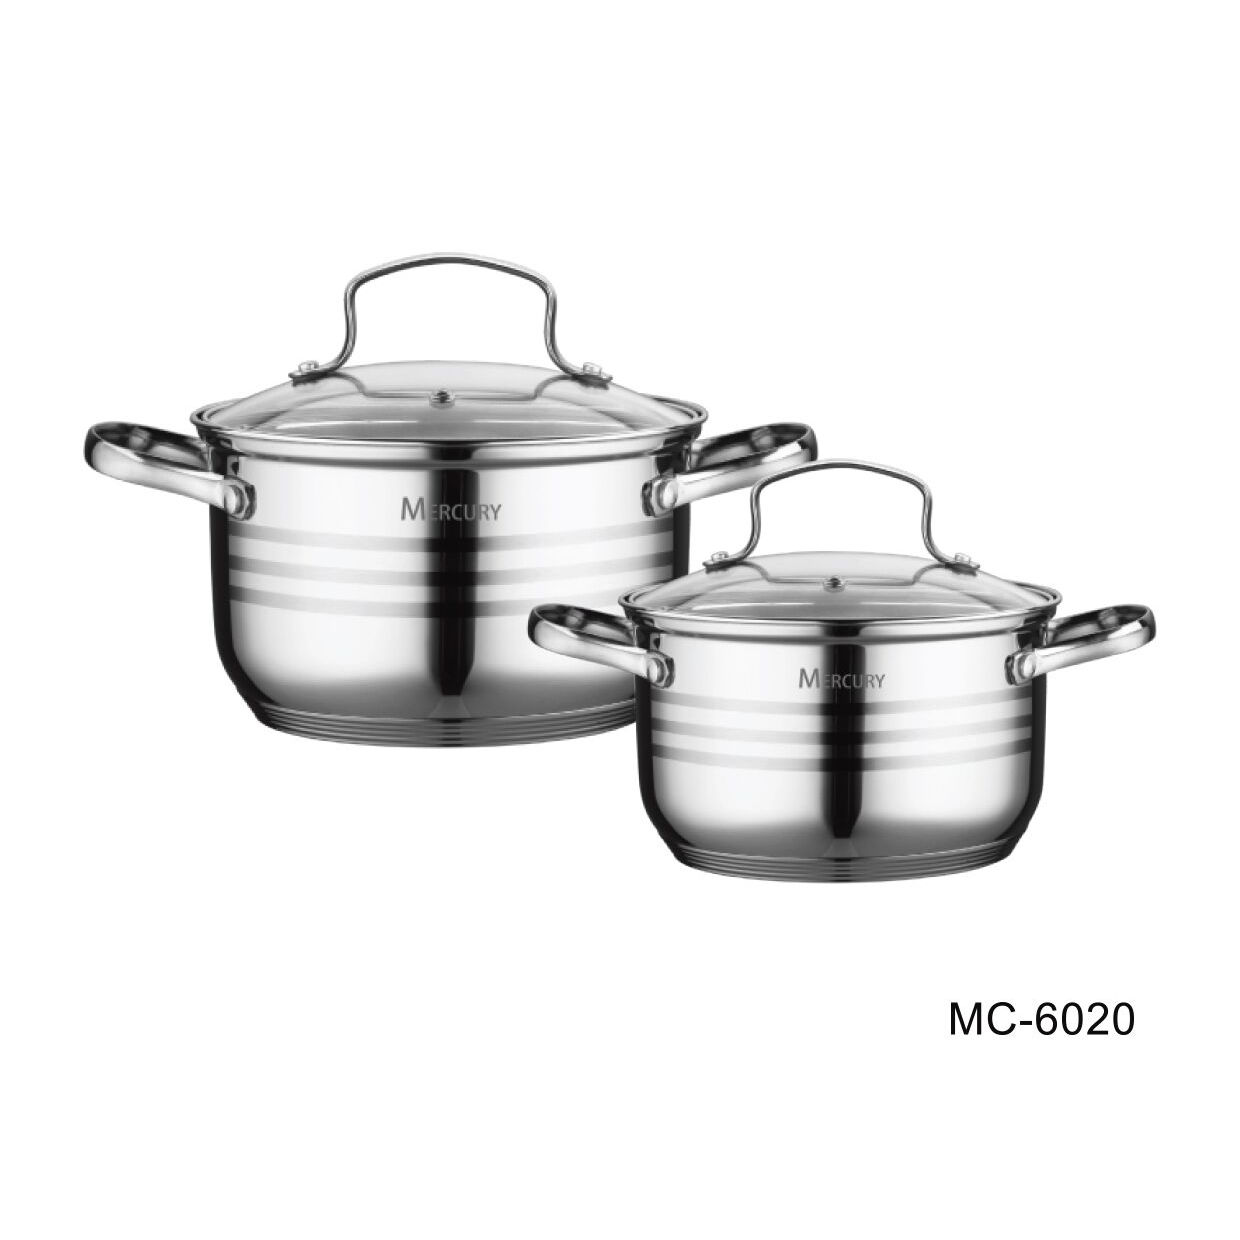 Посуда с толстым дном. Набор посуды Mercury MC-7012. Mercury haus кастрюли набор. Набор посуды Mercury MC-6017. Посуда набор посуды "Mercury", MC - 6018 (4) 6 предметов 2,8/1,9/1,3 л 20/18/16 см.